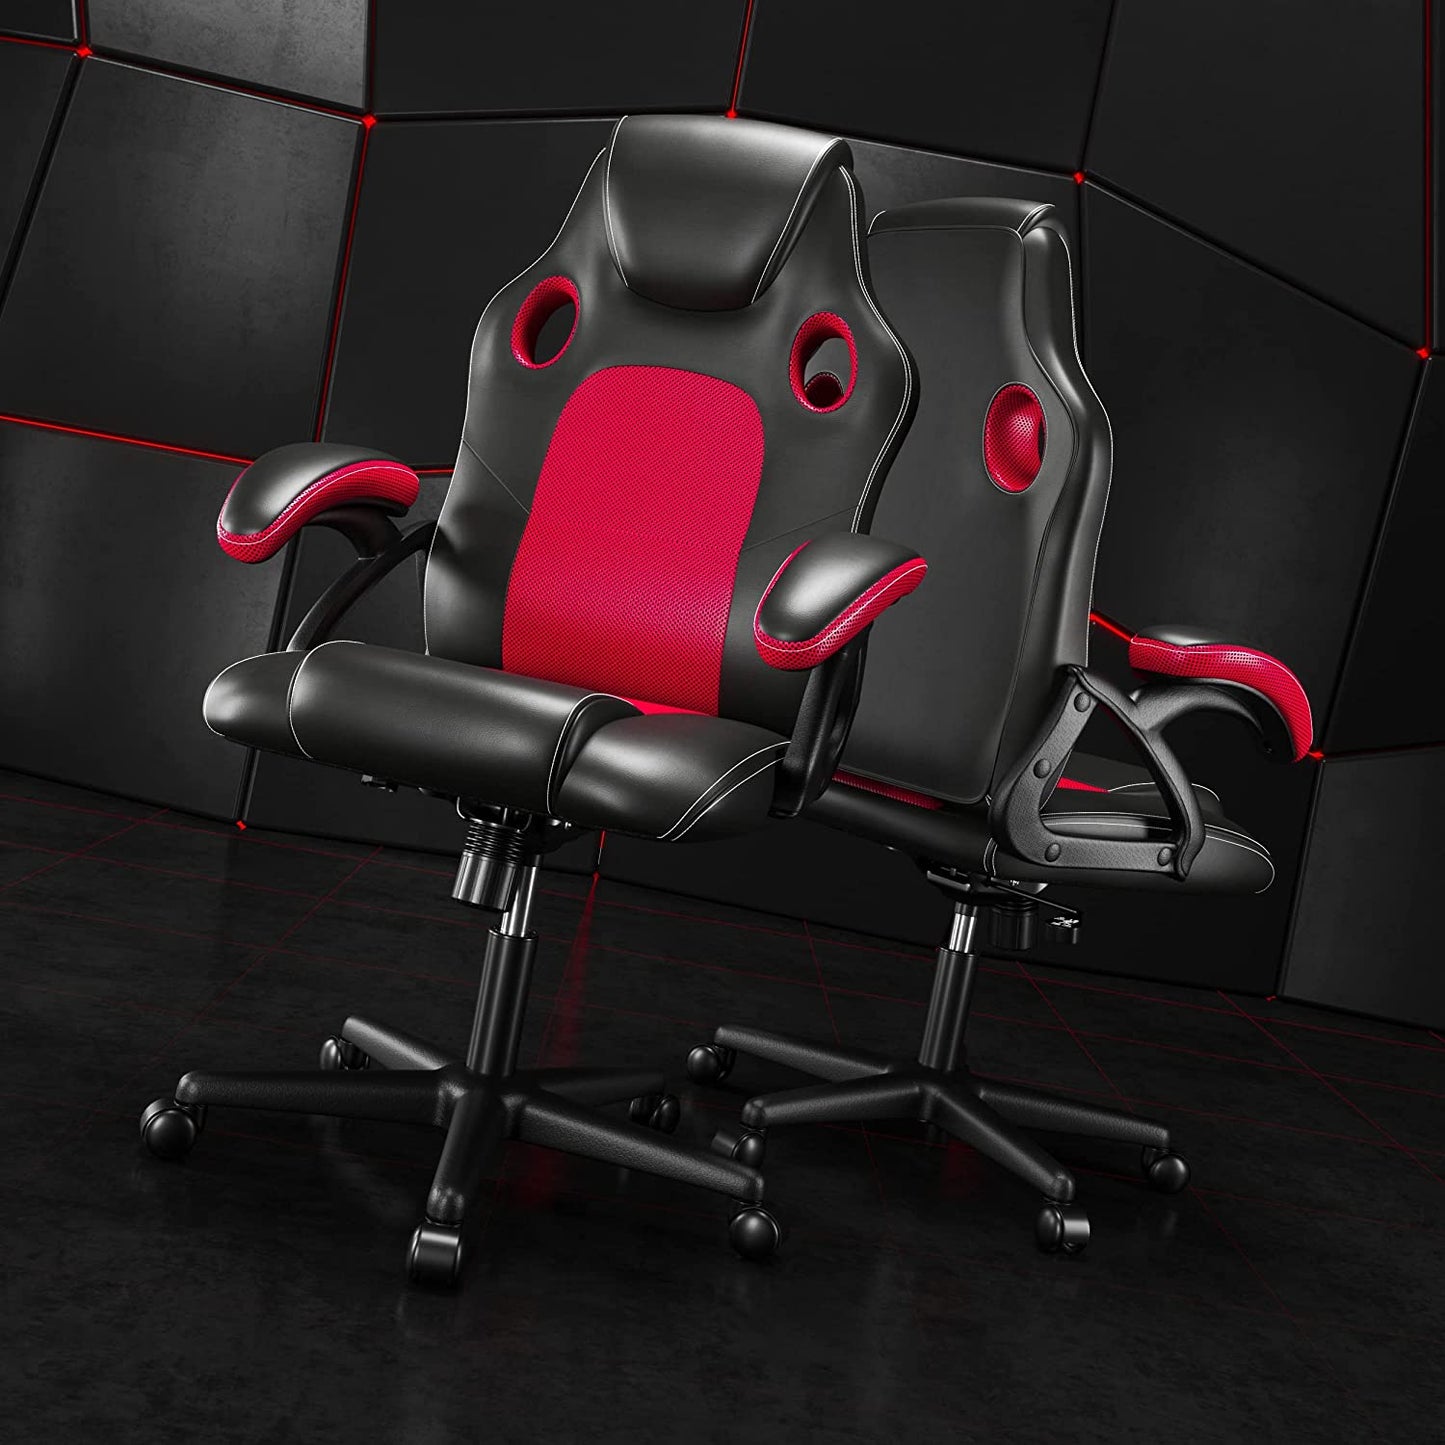 .Gaming Chair Office Chair Swivel Chair Computer Chair Work Chair Desk Chair Ergonomic Chair Racing Chair Leather Chair PC Gaming Chair (Red)